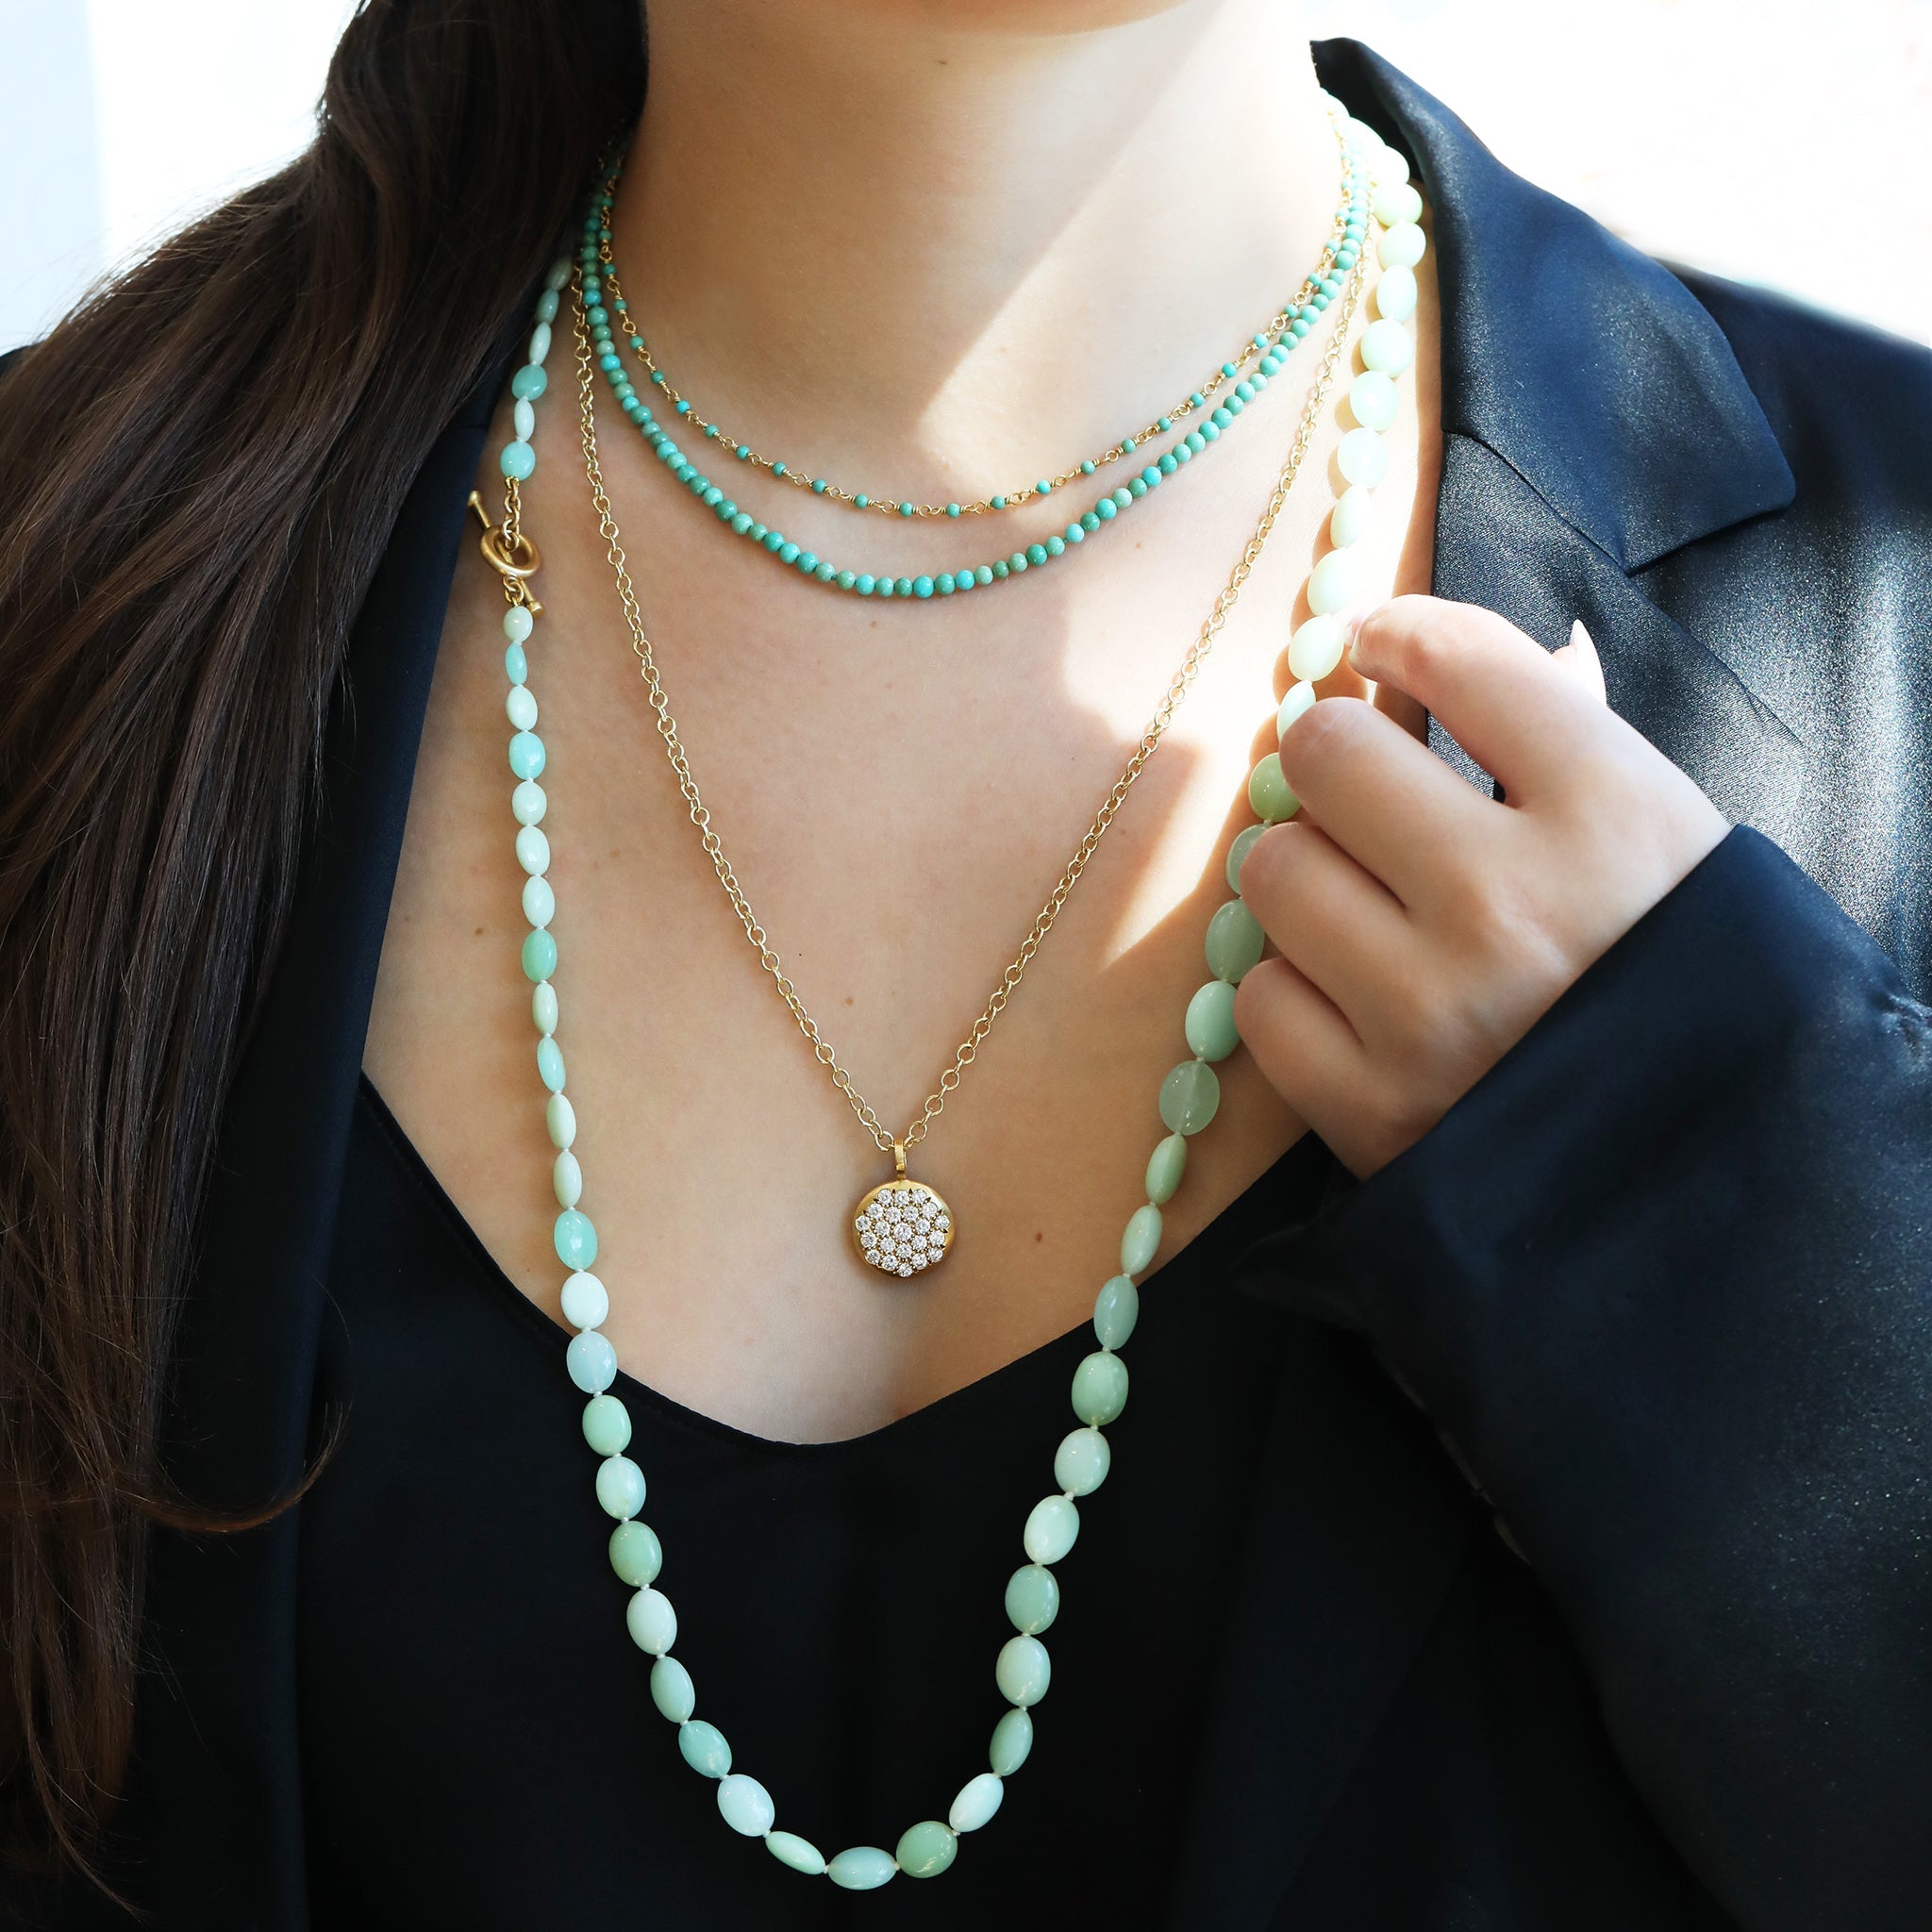 20K Gold Wire-Wrapped Turquoise Choker Necklace - Peridot Fine Jewelry - Caroline Ellen